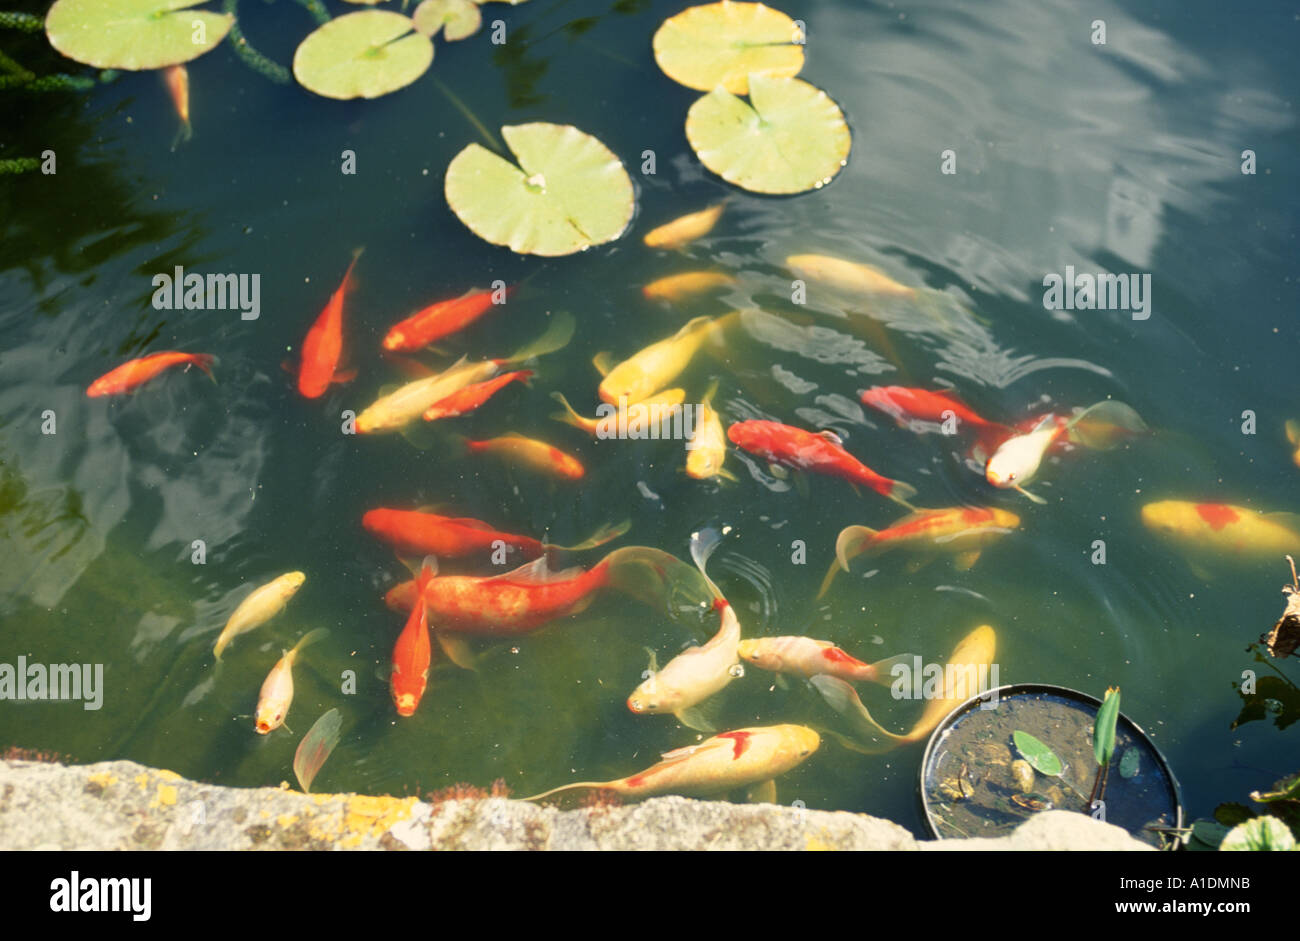 Ampio laghetto in giardino con pesci rossi e carpe koi Foto Stock